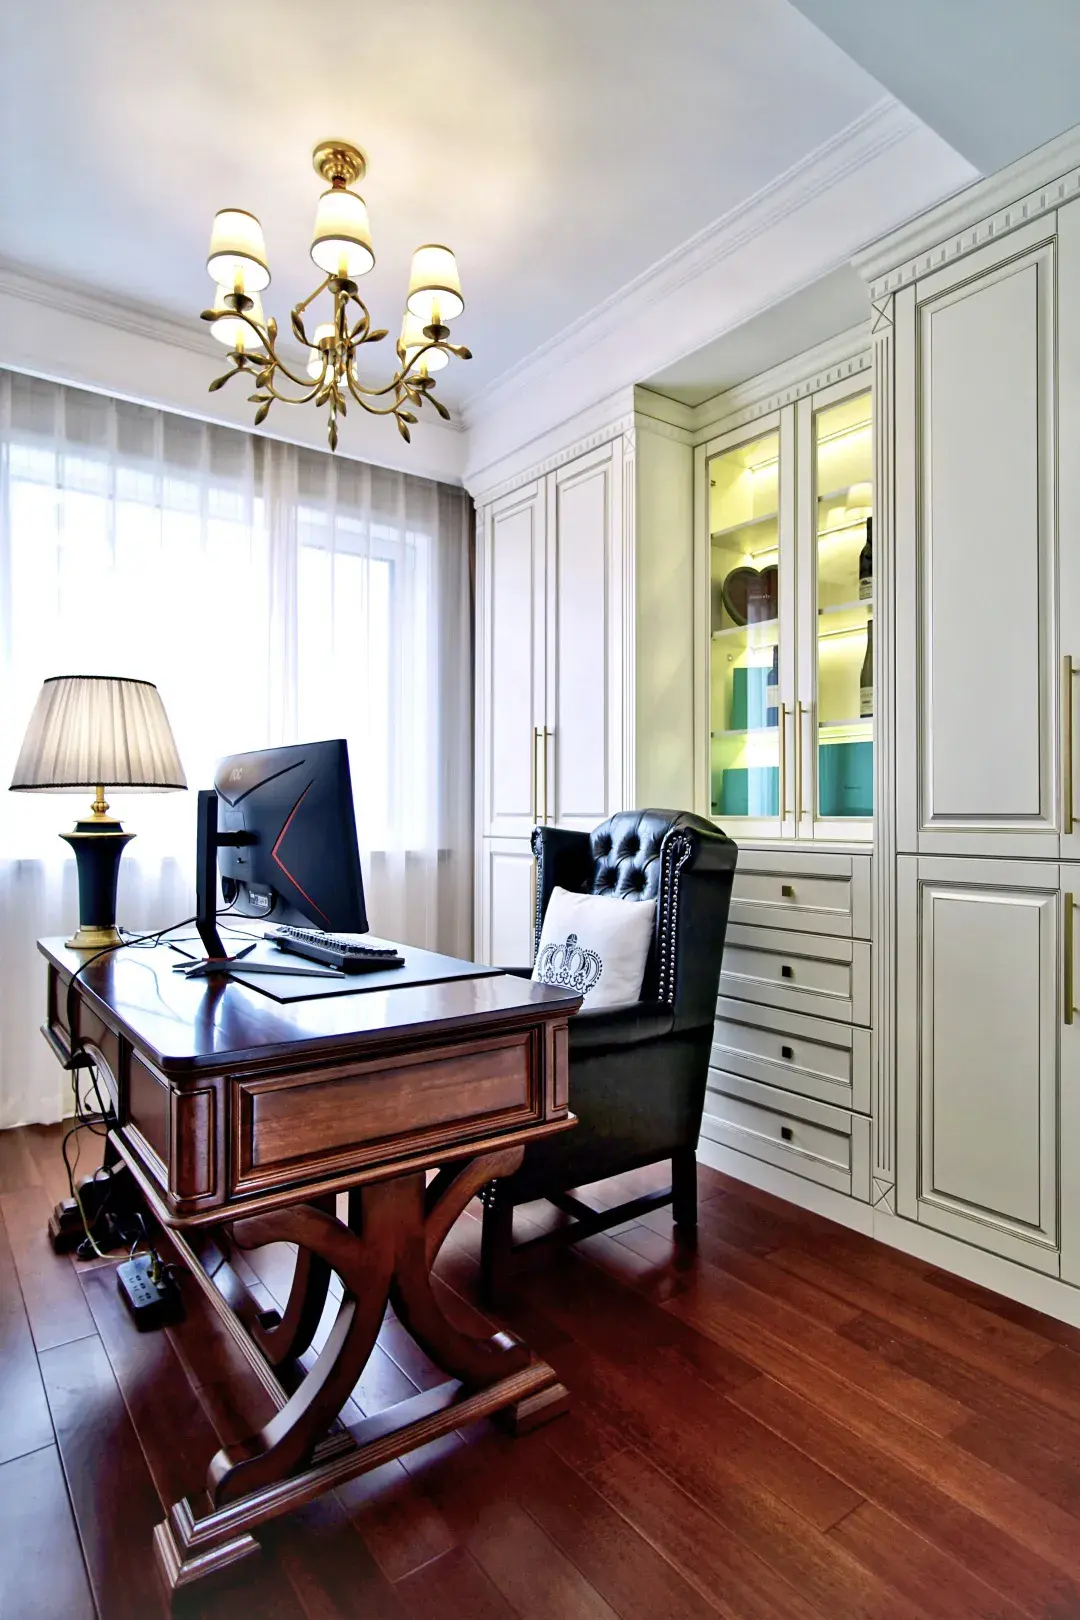 美式风格」书房纯美式风格书桌与白色家具呼应,衬托男主人办公